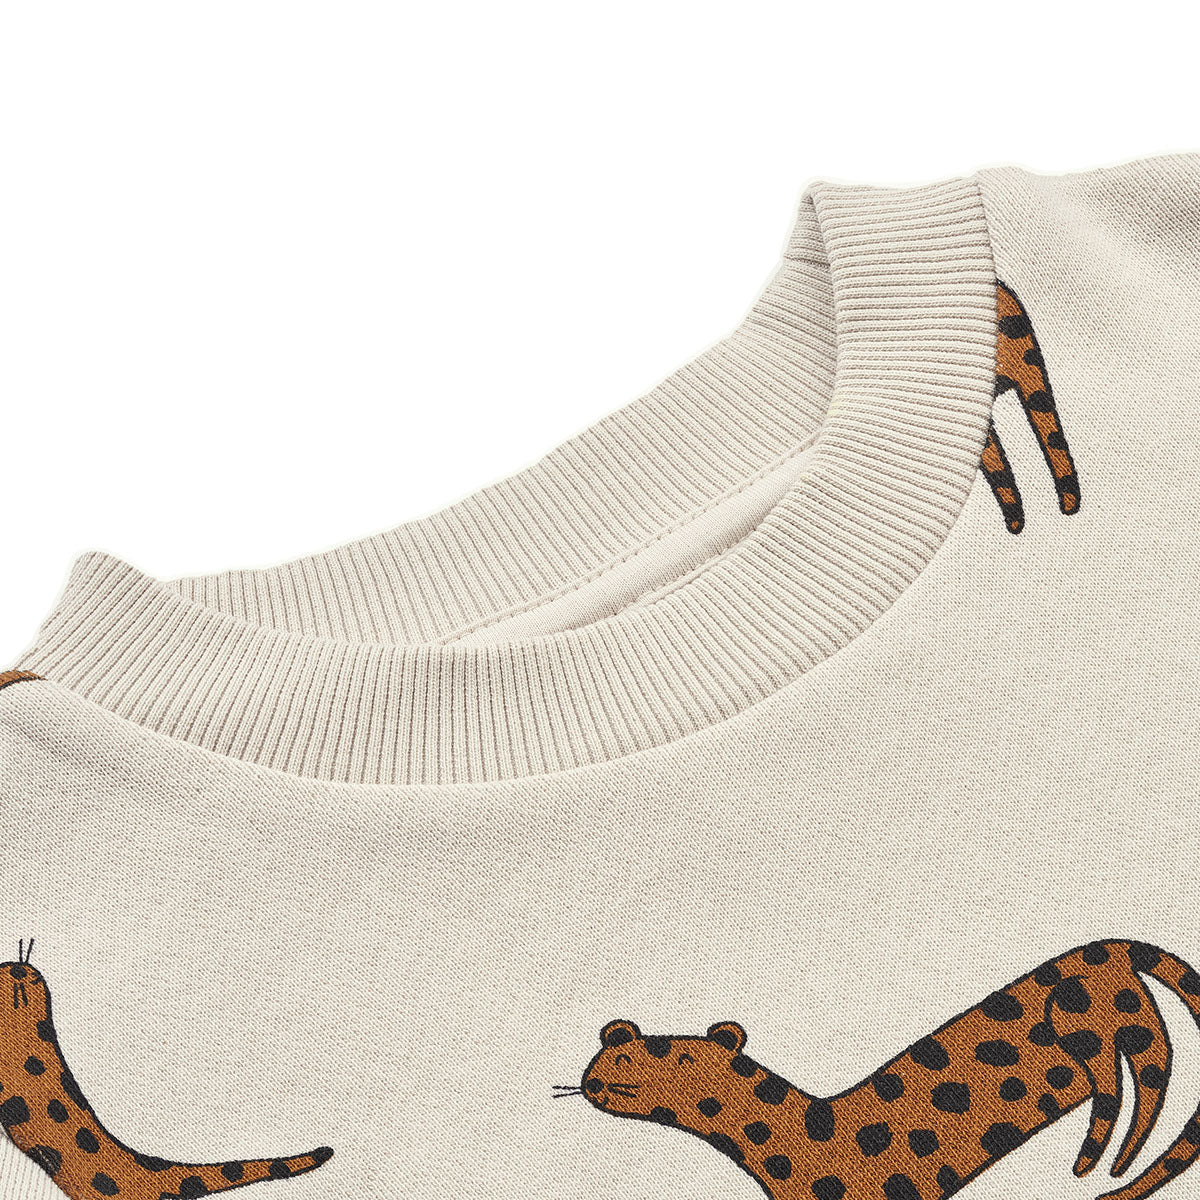 Deze geweldige thora trui in leopard/sandy is perfect voor chilldagen en om leuke maat comfortabele outfits mee te stijlen! Deze trui van het merk Liewood ziet er namelijk ontzettend leuk uit, maar zit ook supercomfortabel, dankzij de heerlijk zachte katoenen stof! VanZus